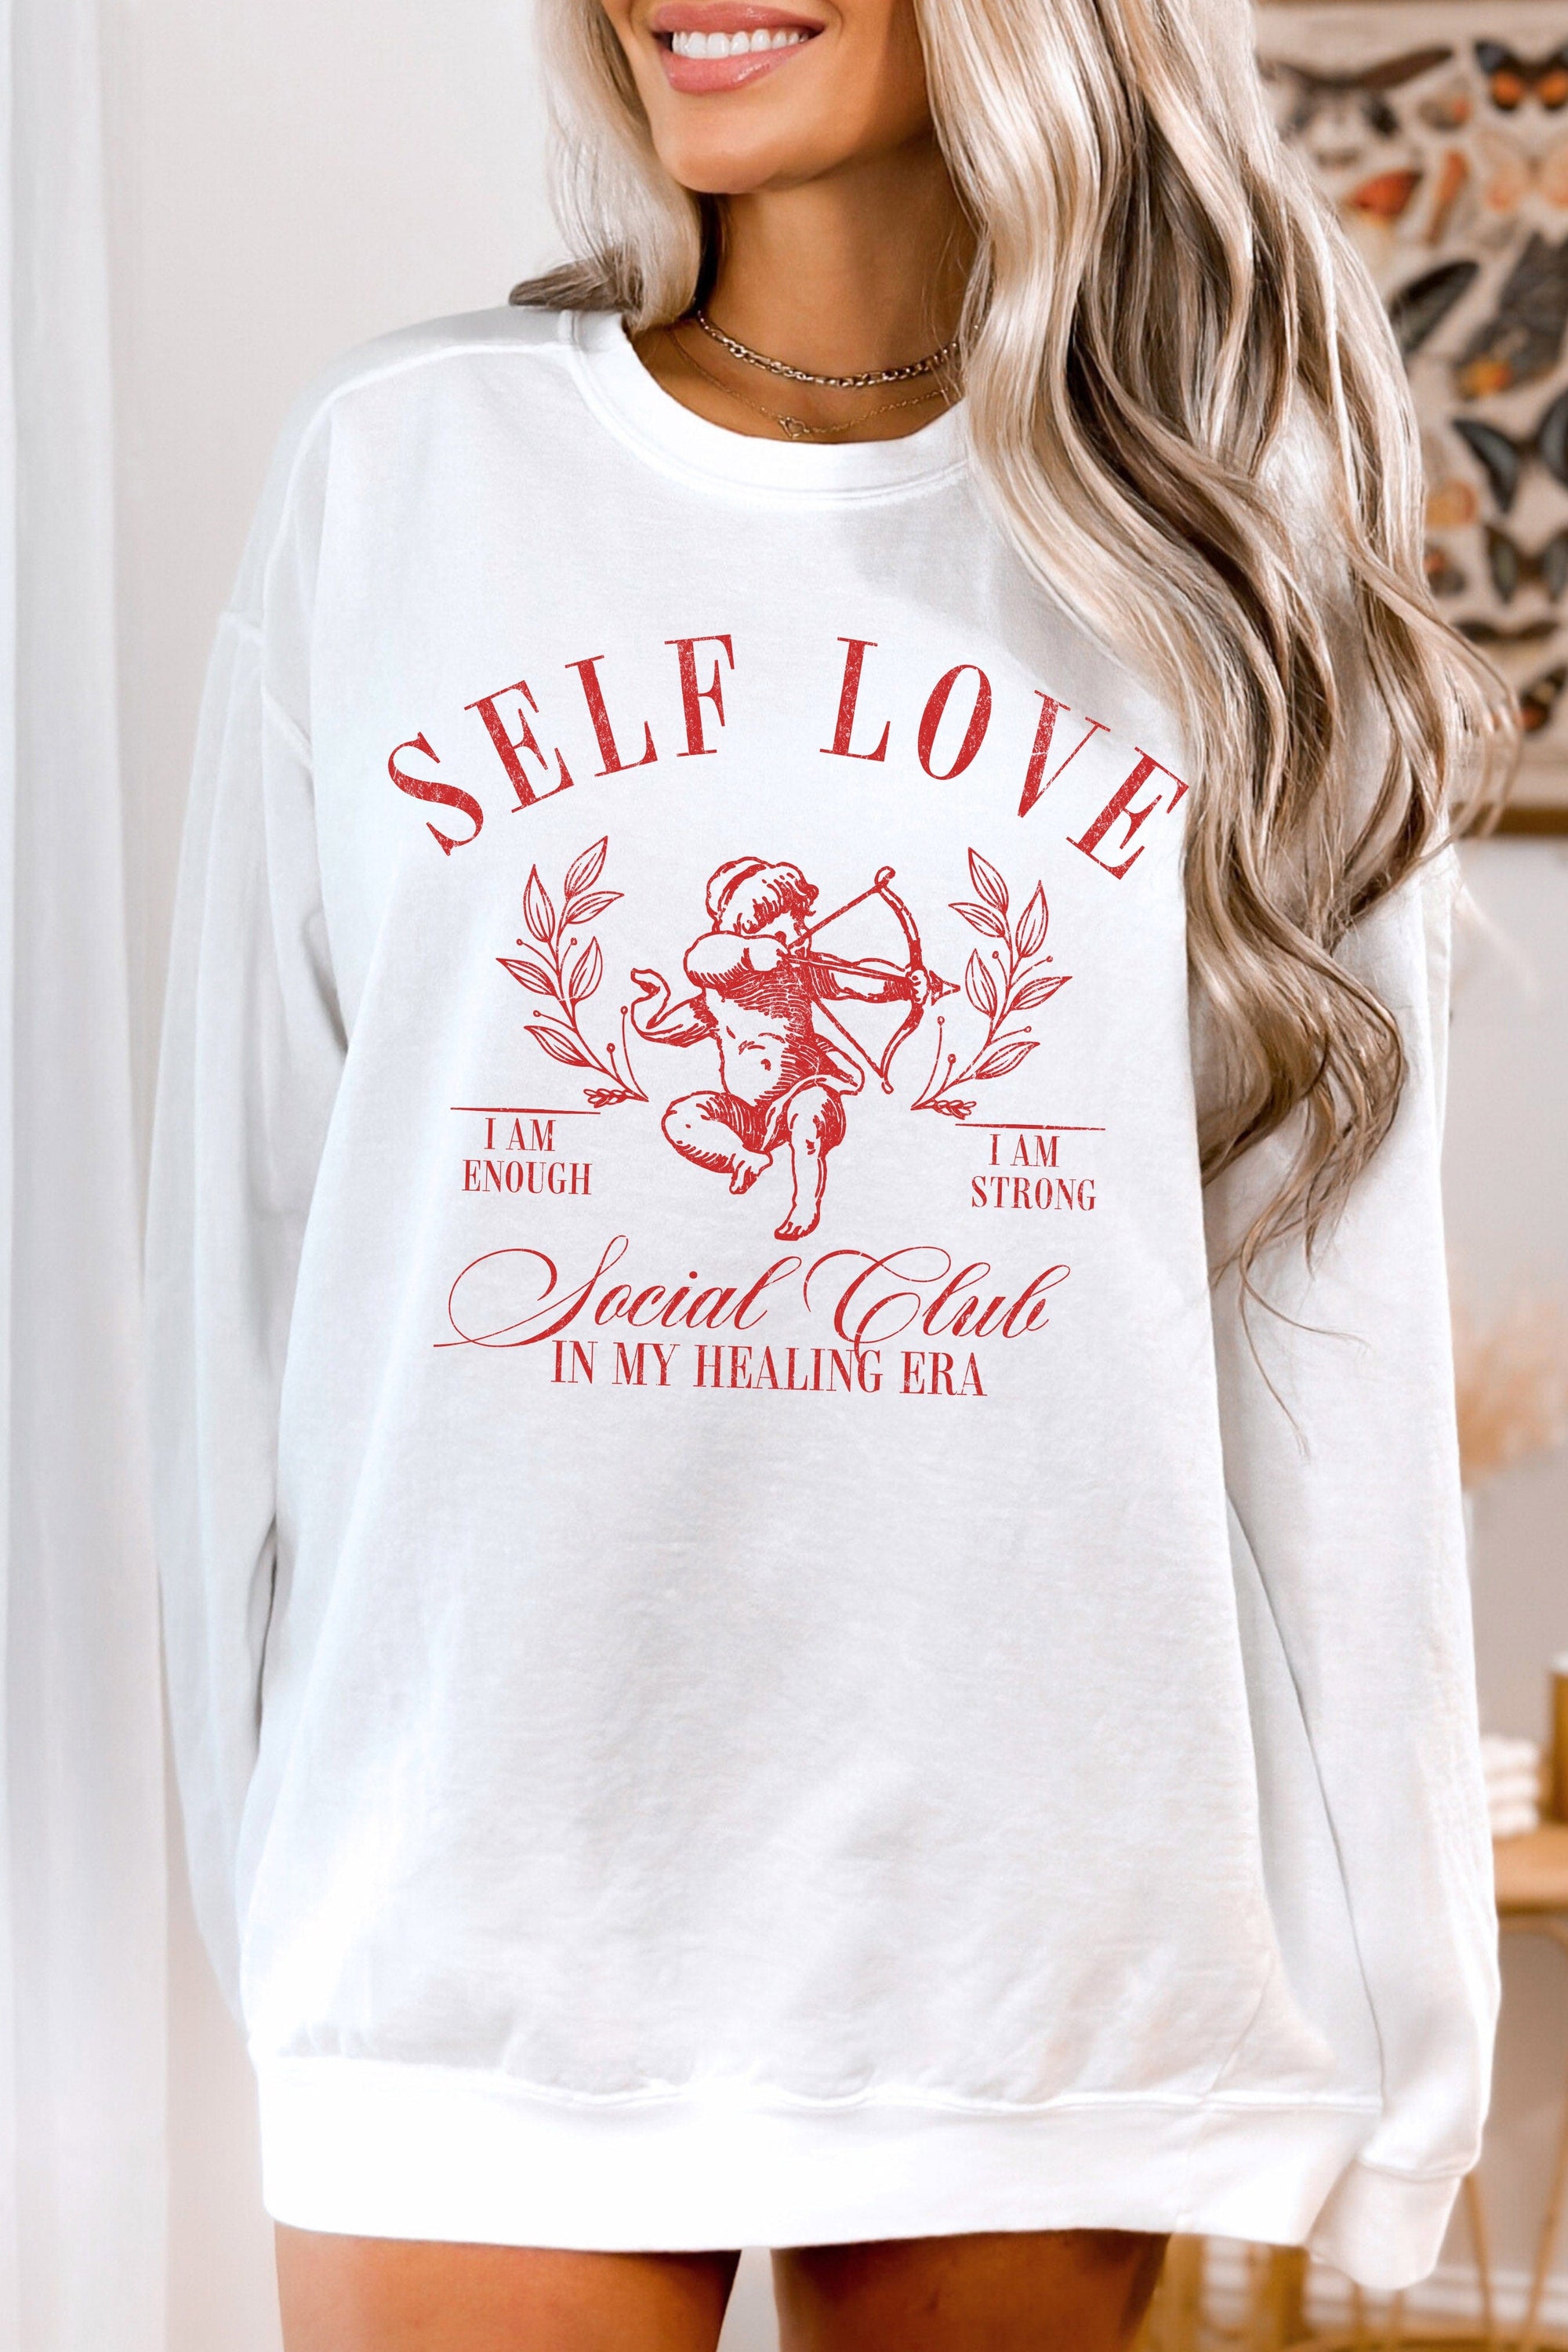 Self Love Social Club Sweatshirt